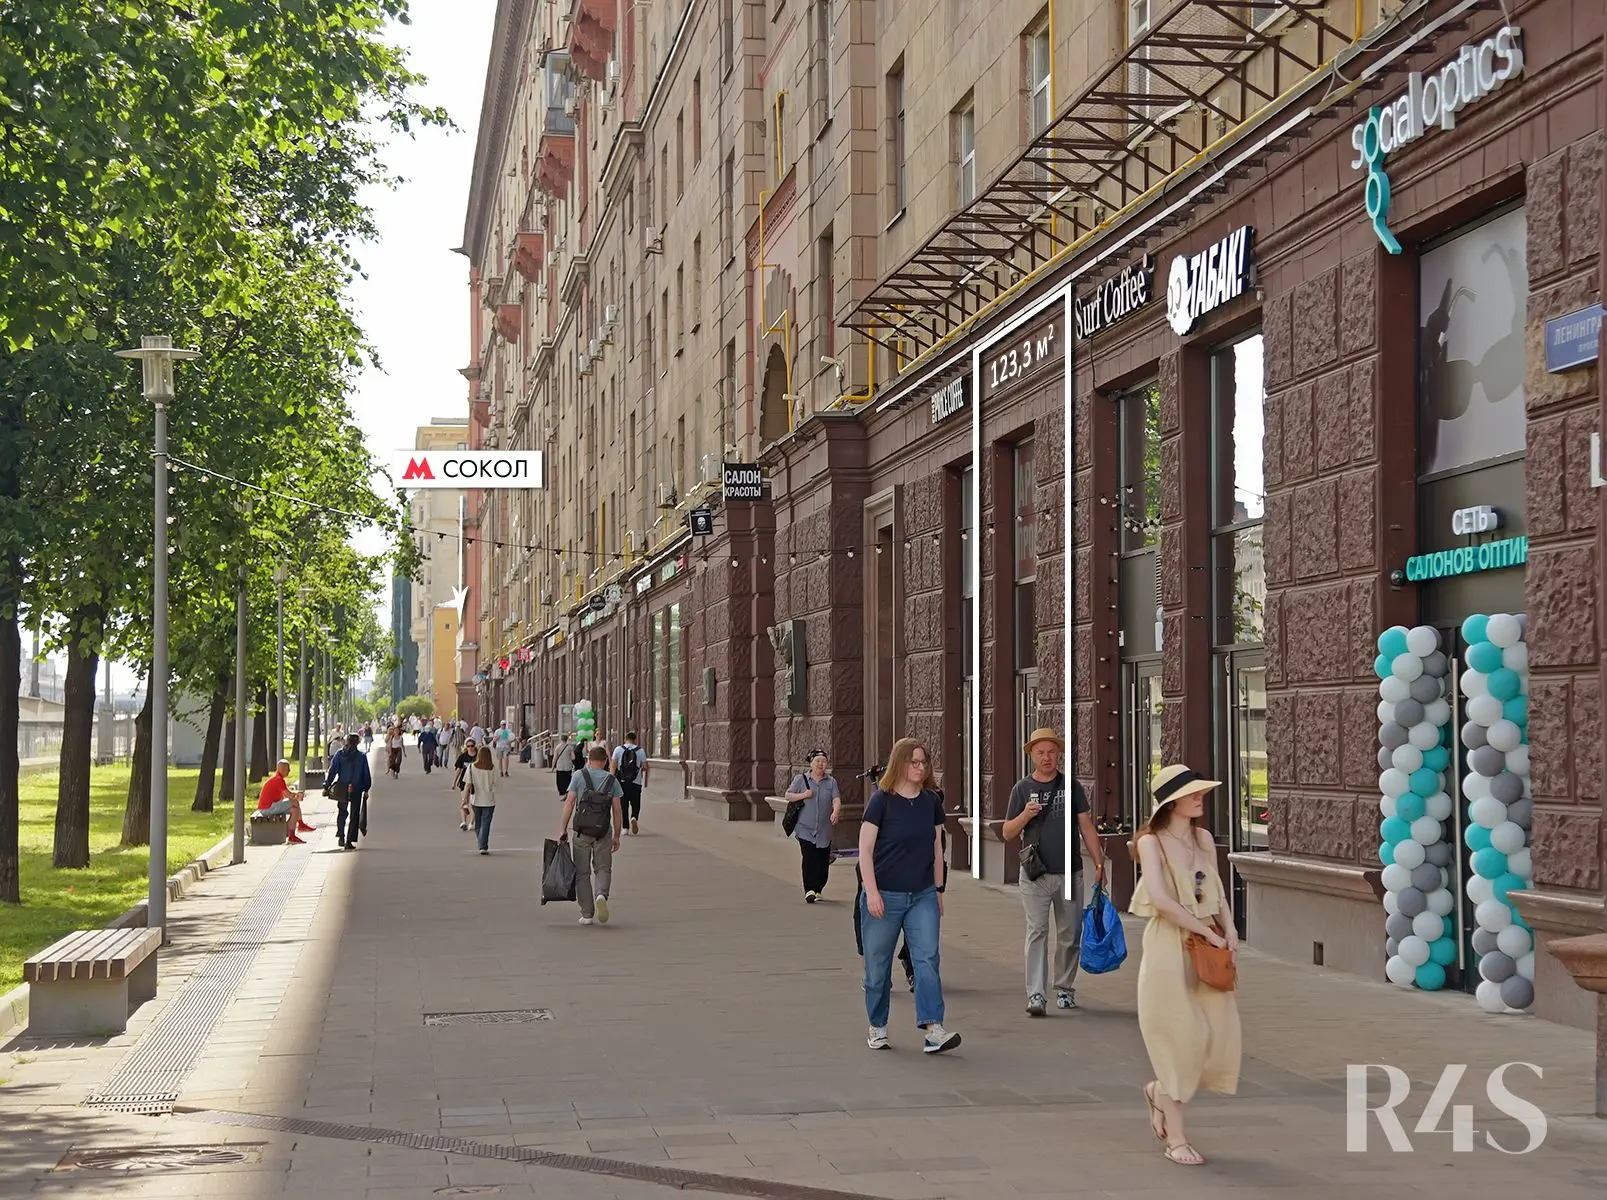 Продажа торгового помещения площадью 123.3 м2 в Москве: Ленинградский проспект, 75к1 R4S | Realty4Sale